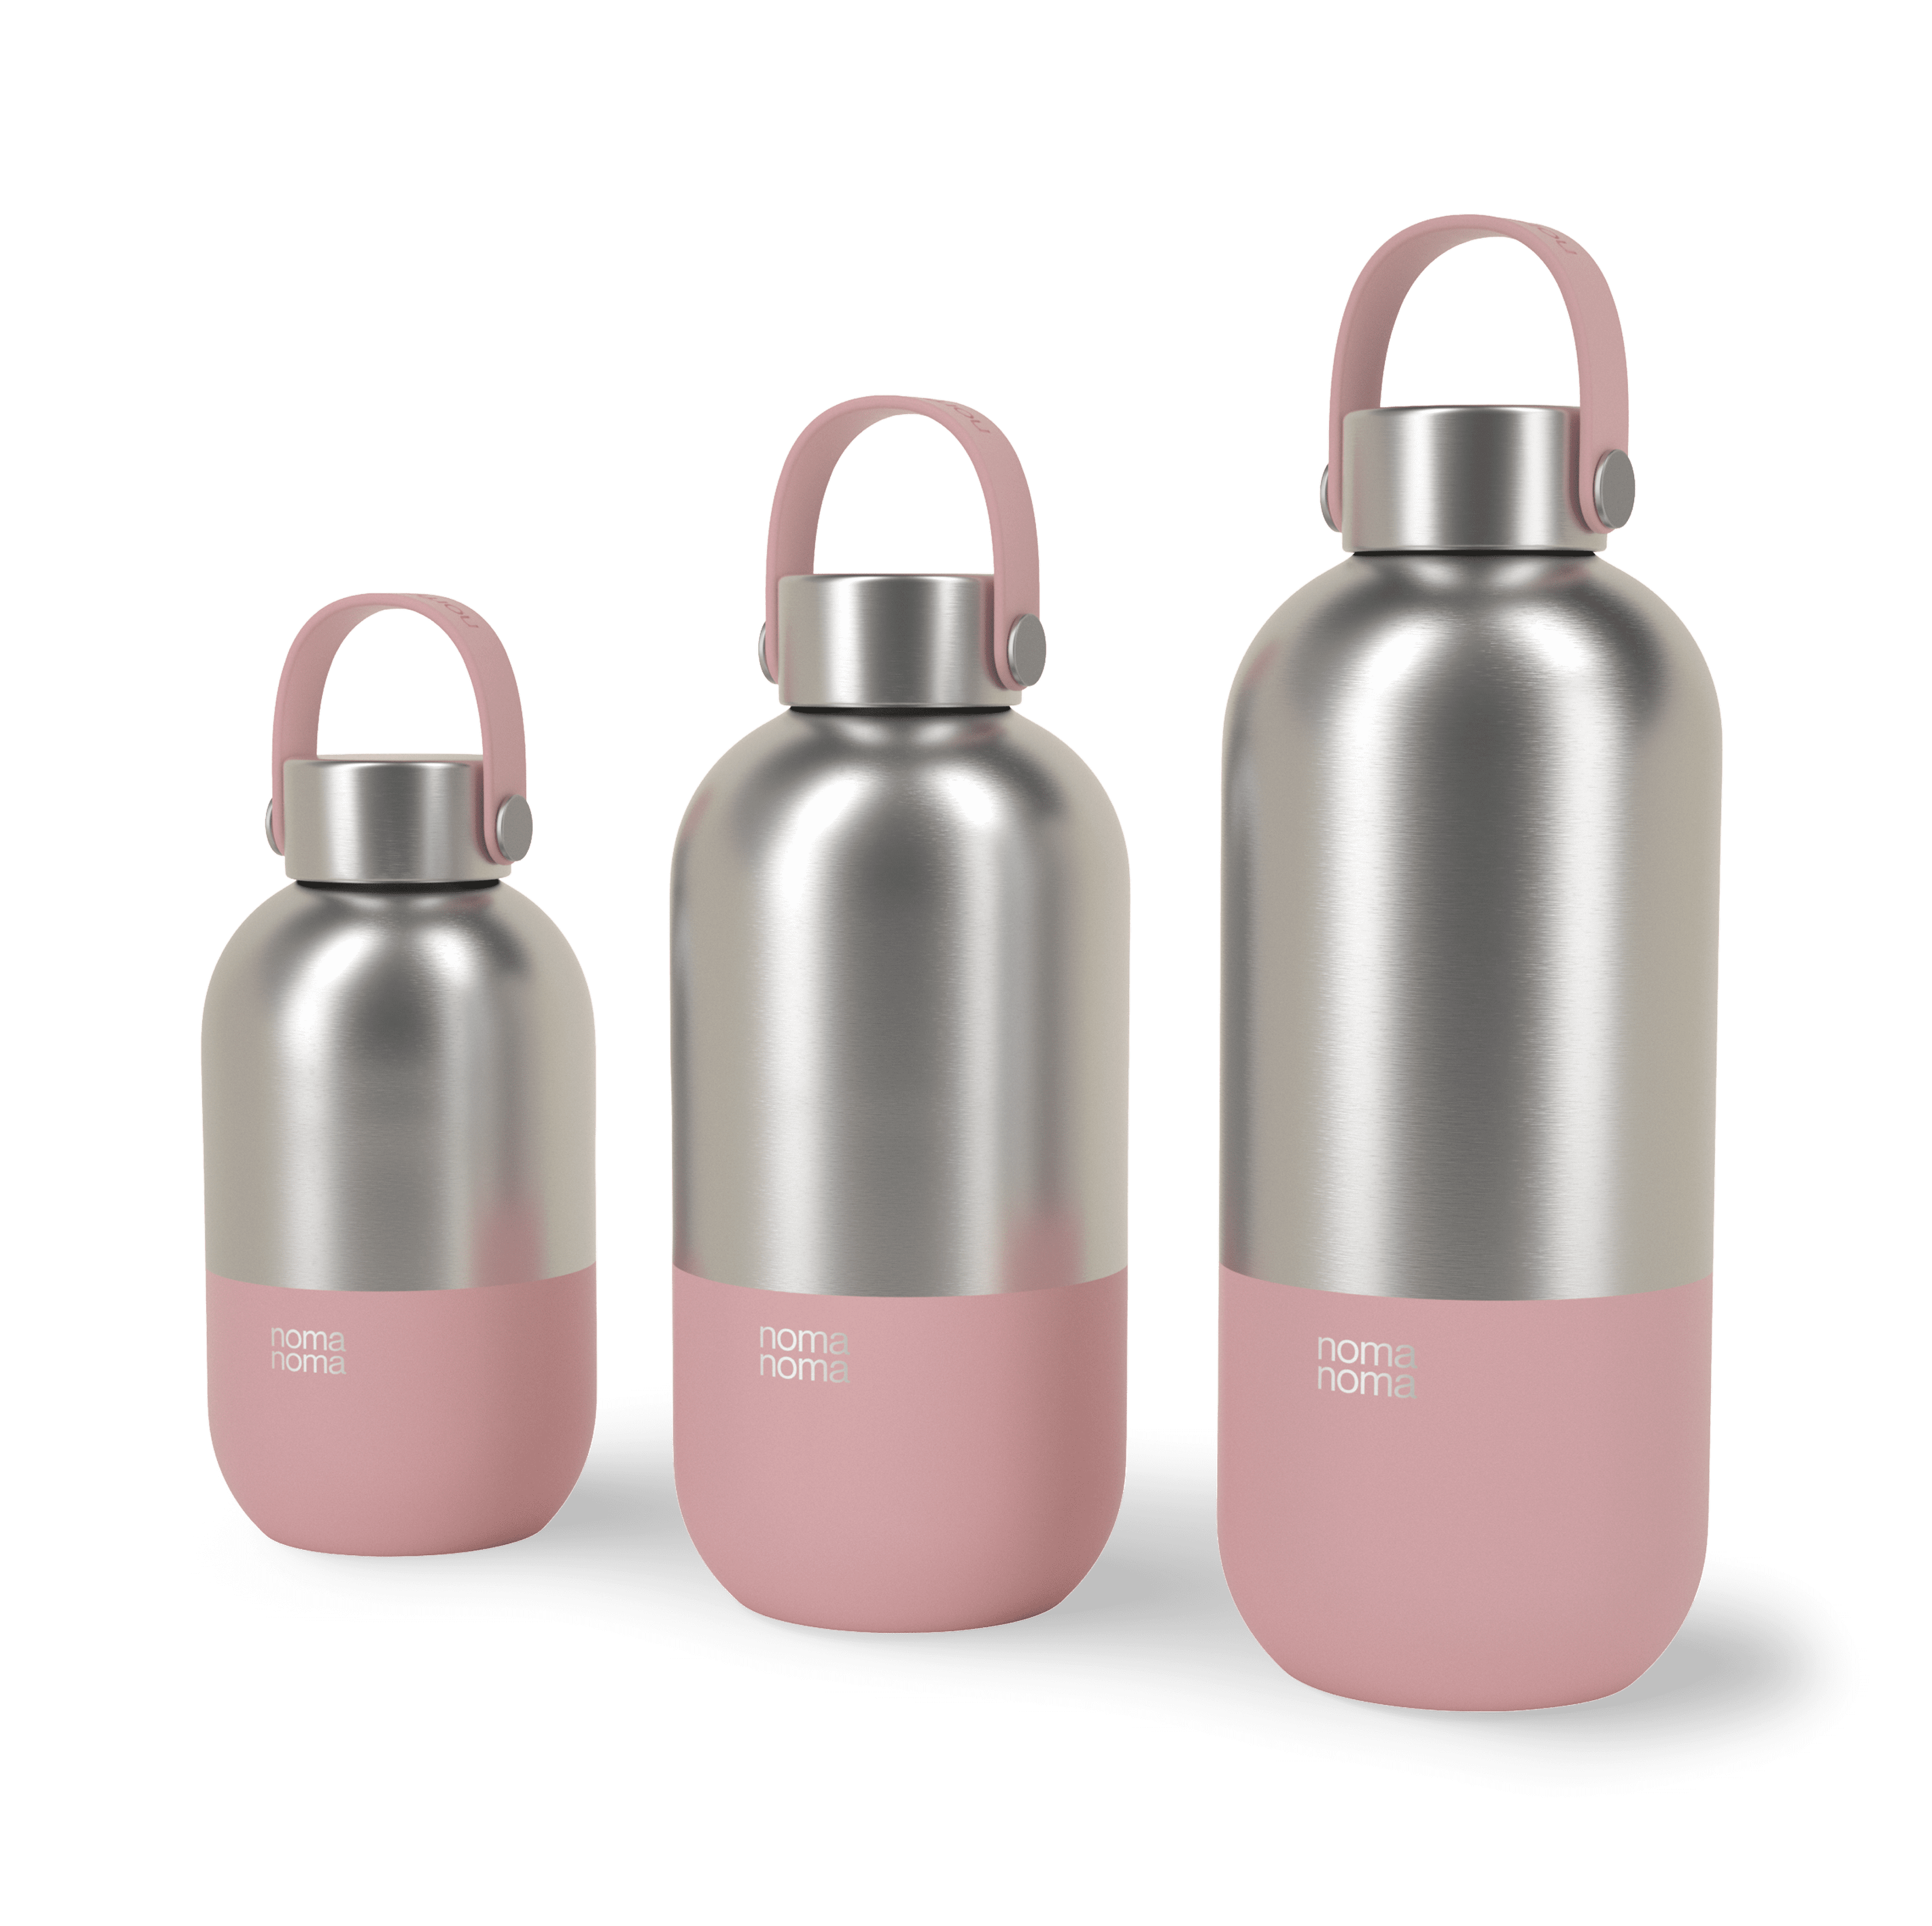 Die milkshake pink noma noma Edelstahl Trinkflasche in drei verschiedenen Größen.